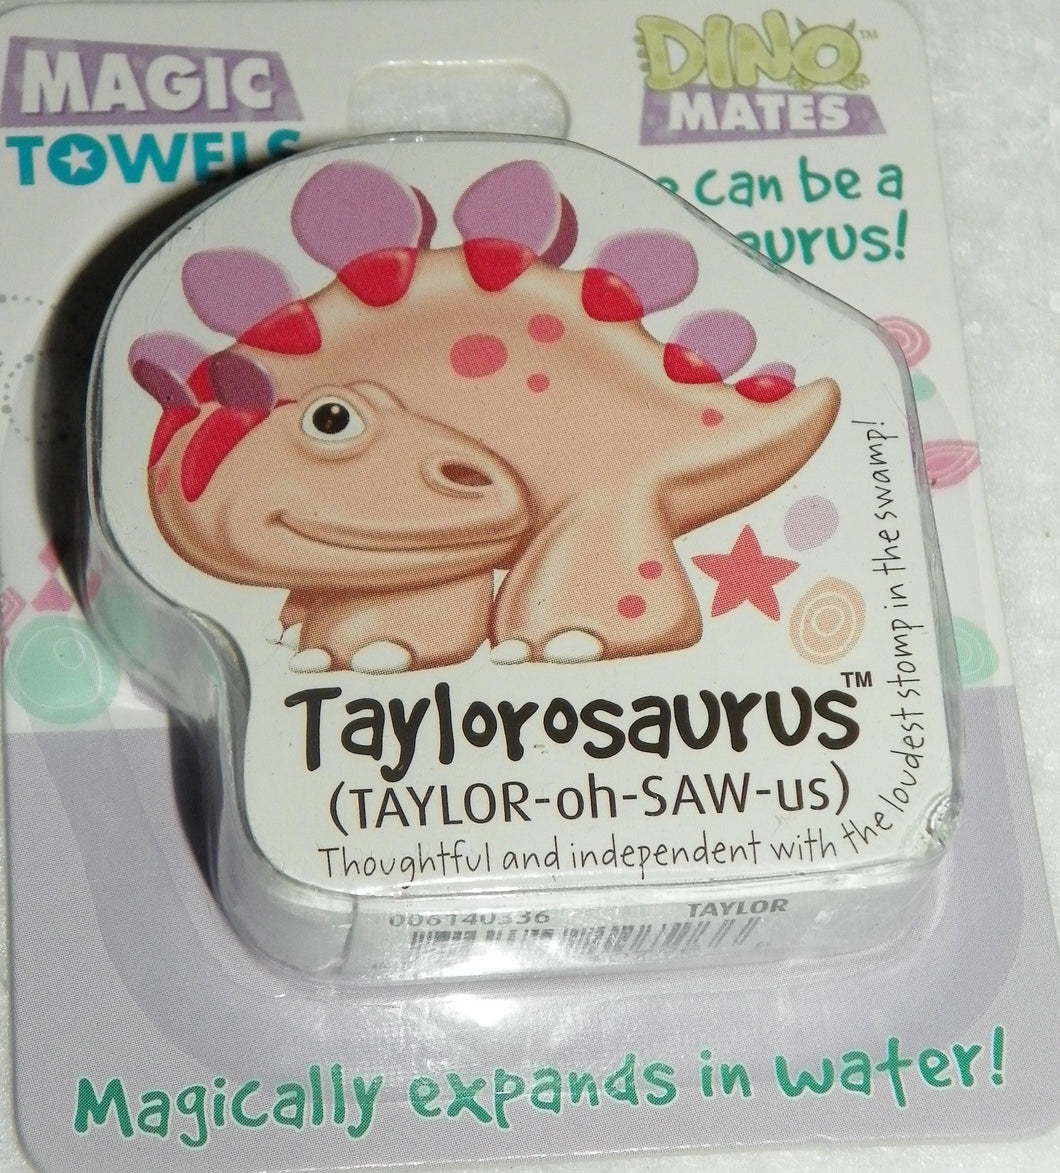 Dinomatic Magic Towel-Taylorsaurus